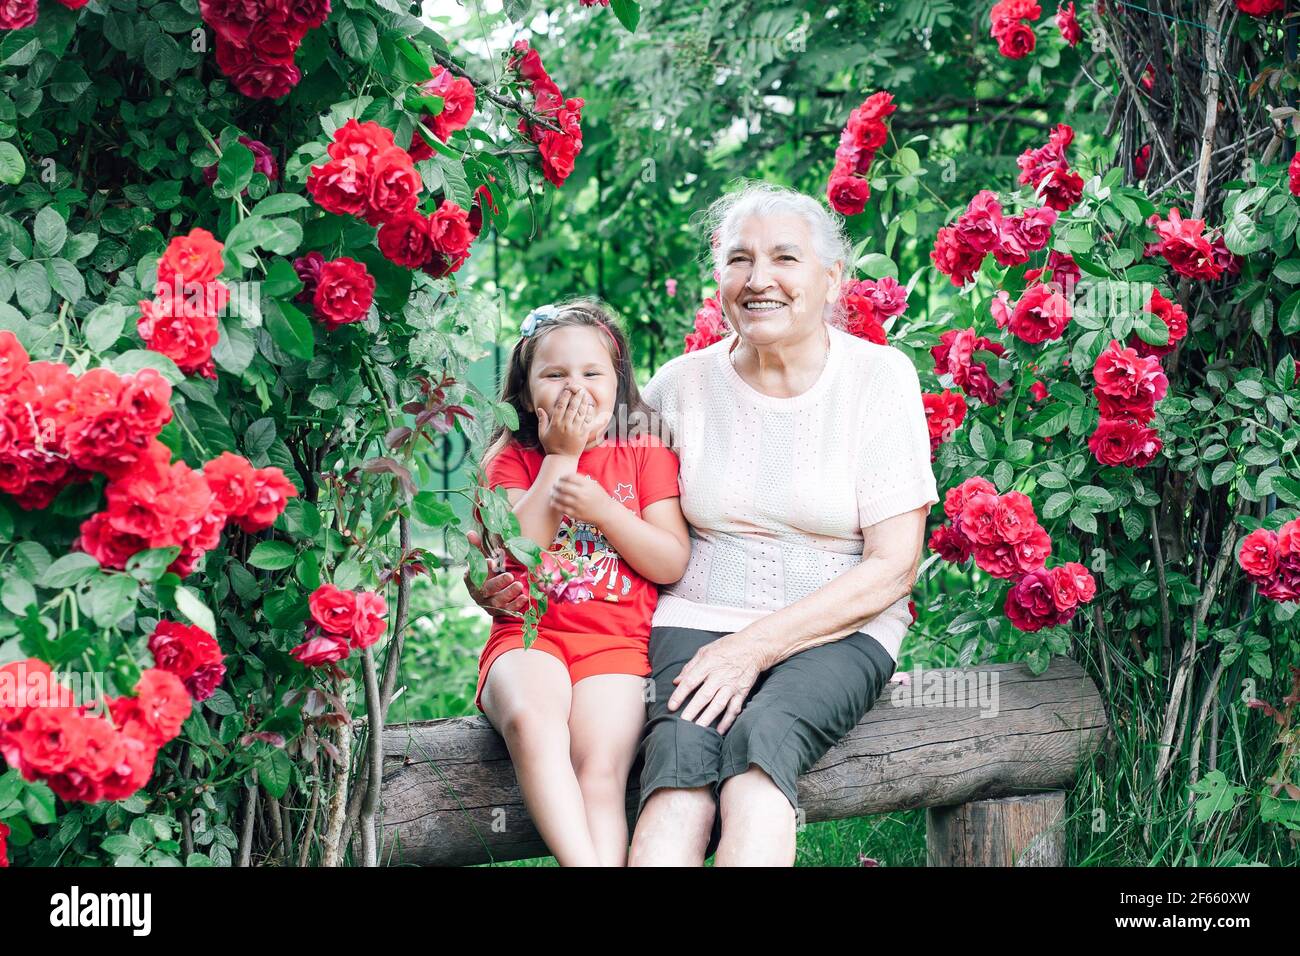 una anciana de pelo blanco con una sonrisa blanca como la nieve y una una niña de cinco años se divierte sentada en un banco el patio con rosales Foto de stock